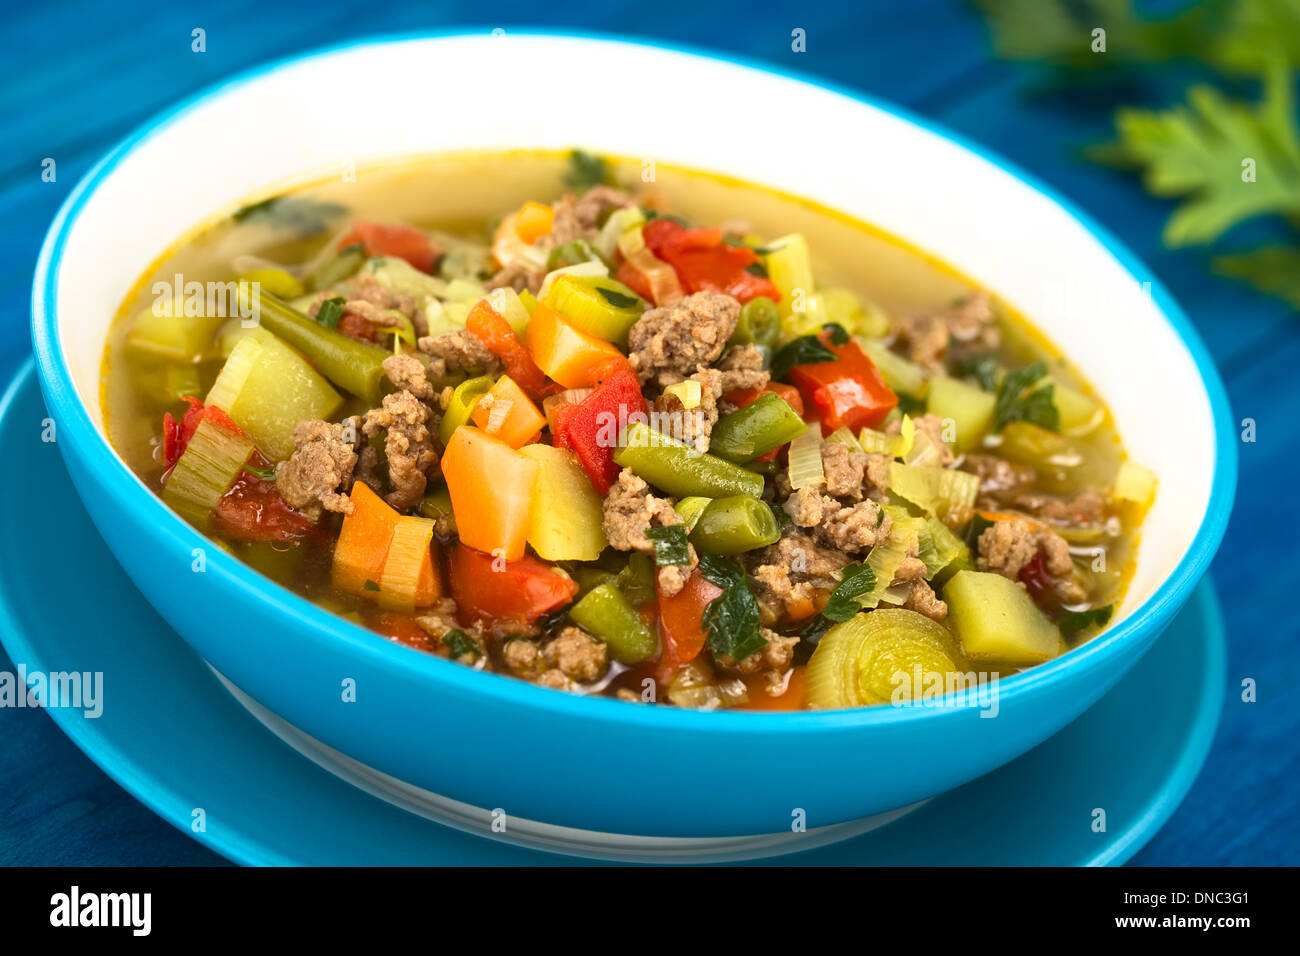 Minestra di verdura con carne macinata, verde fagiolo, patata, Porro, carote, pomodoro e prezzemolo e servite nella ciotola blu Foto Stock